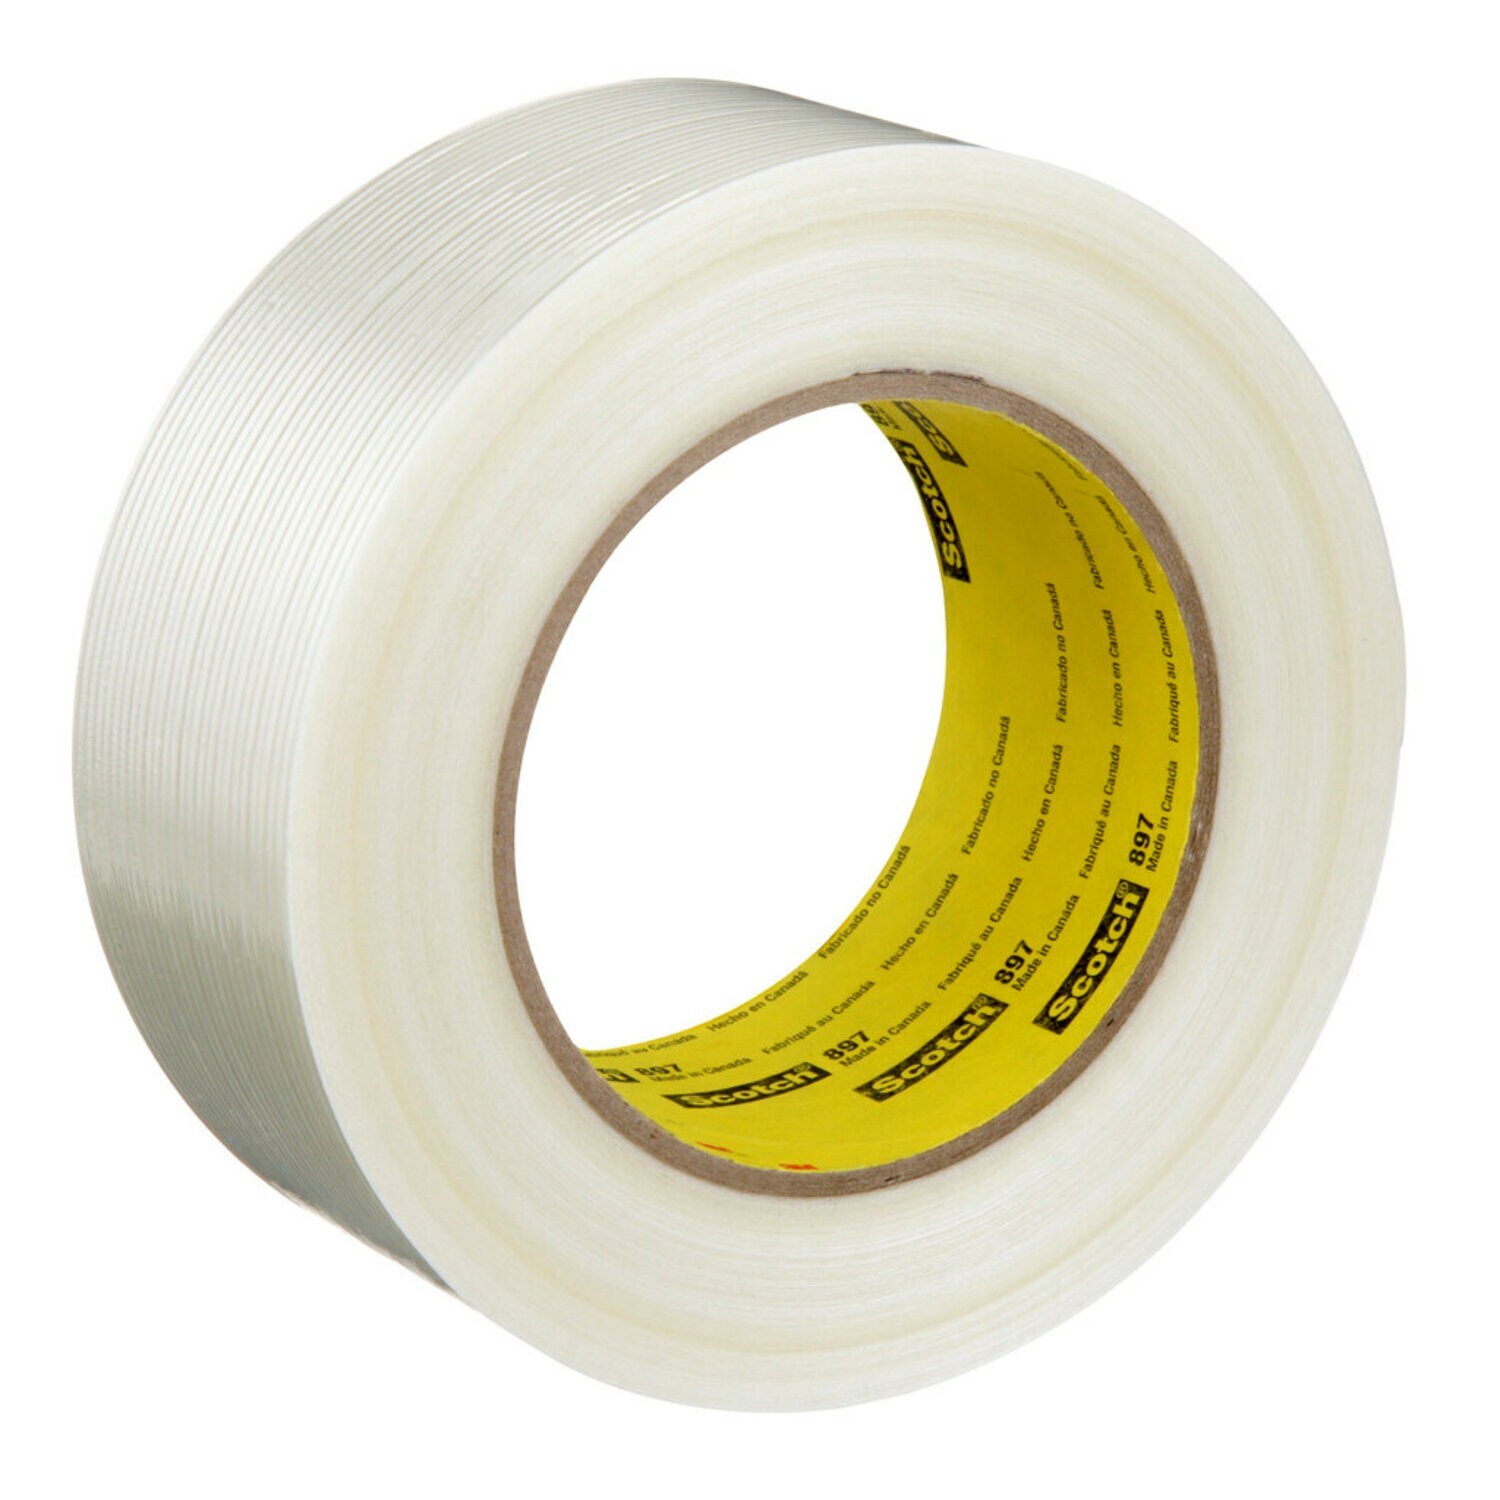 7000123443 - Scotch Filament Tape 897, Clear, 48 mm x 55 m, 5 mil, 24 rolls per case